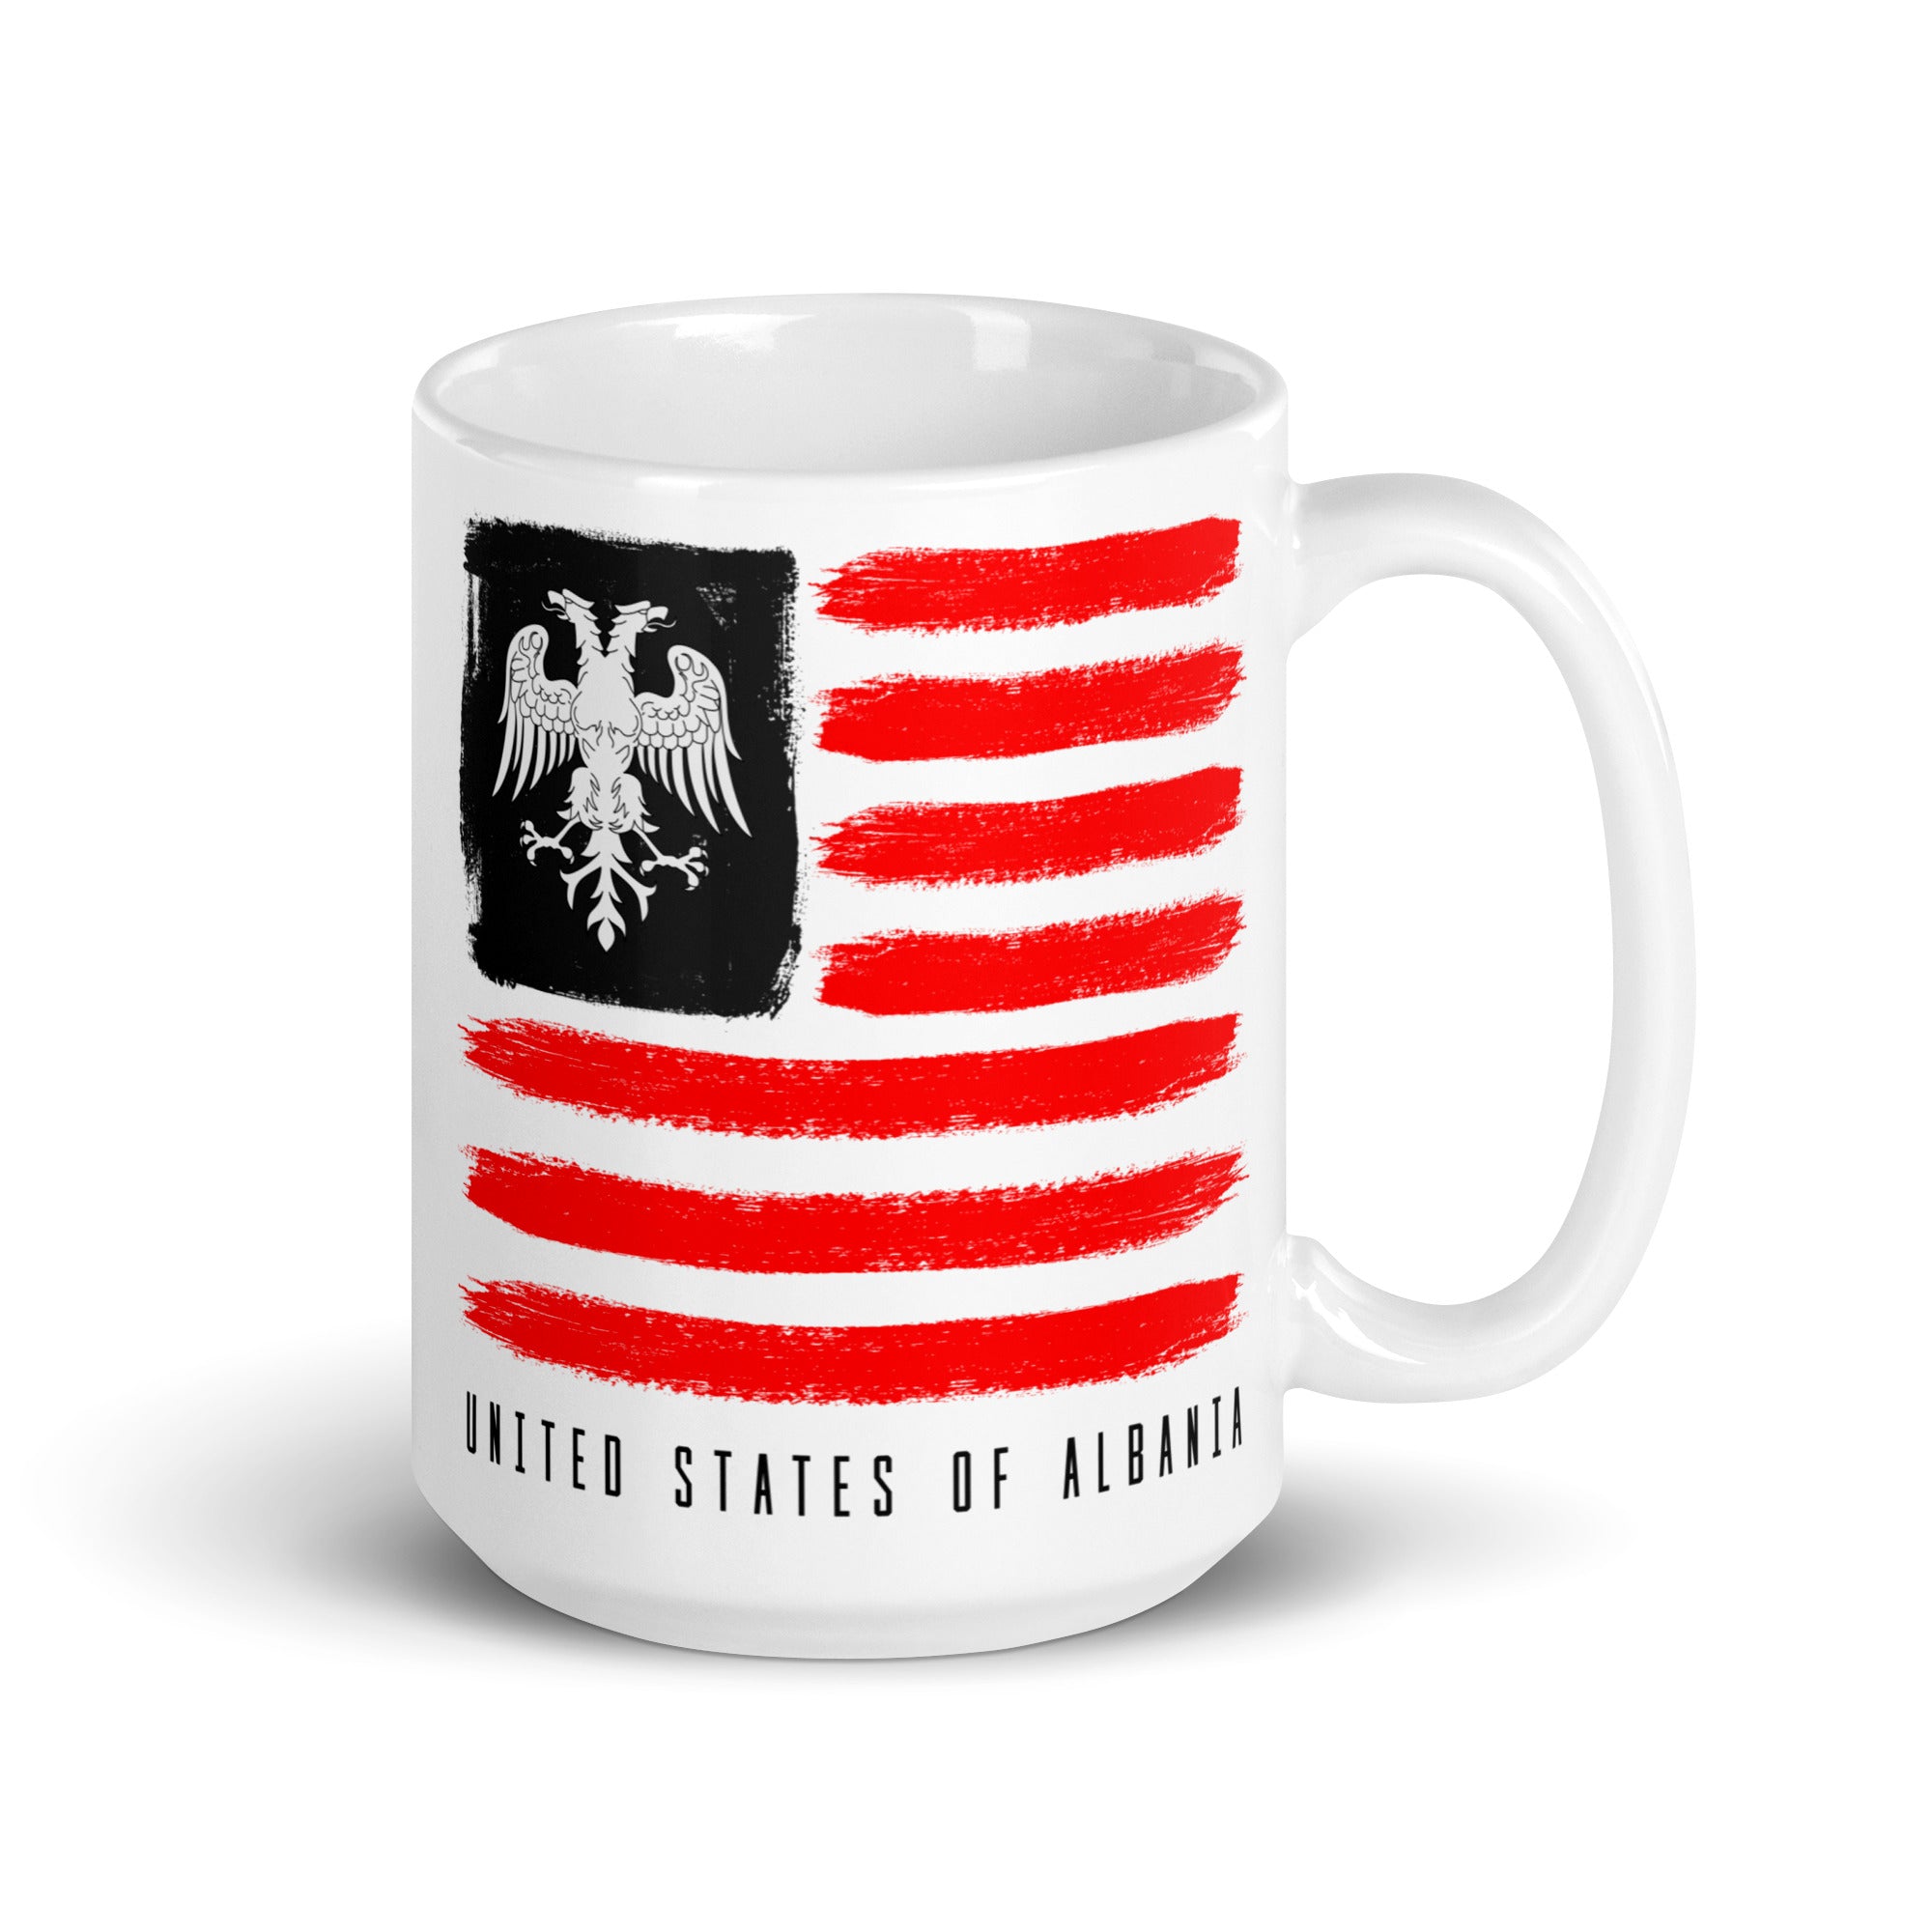 United States of Albania Mug